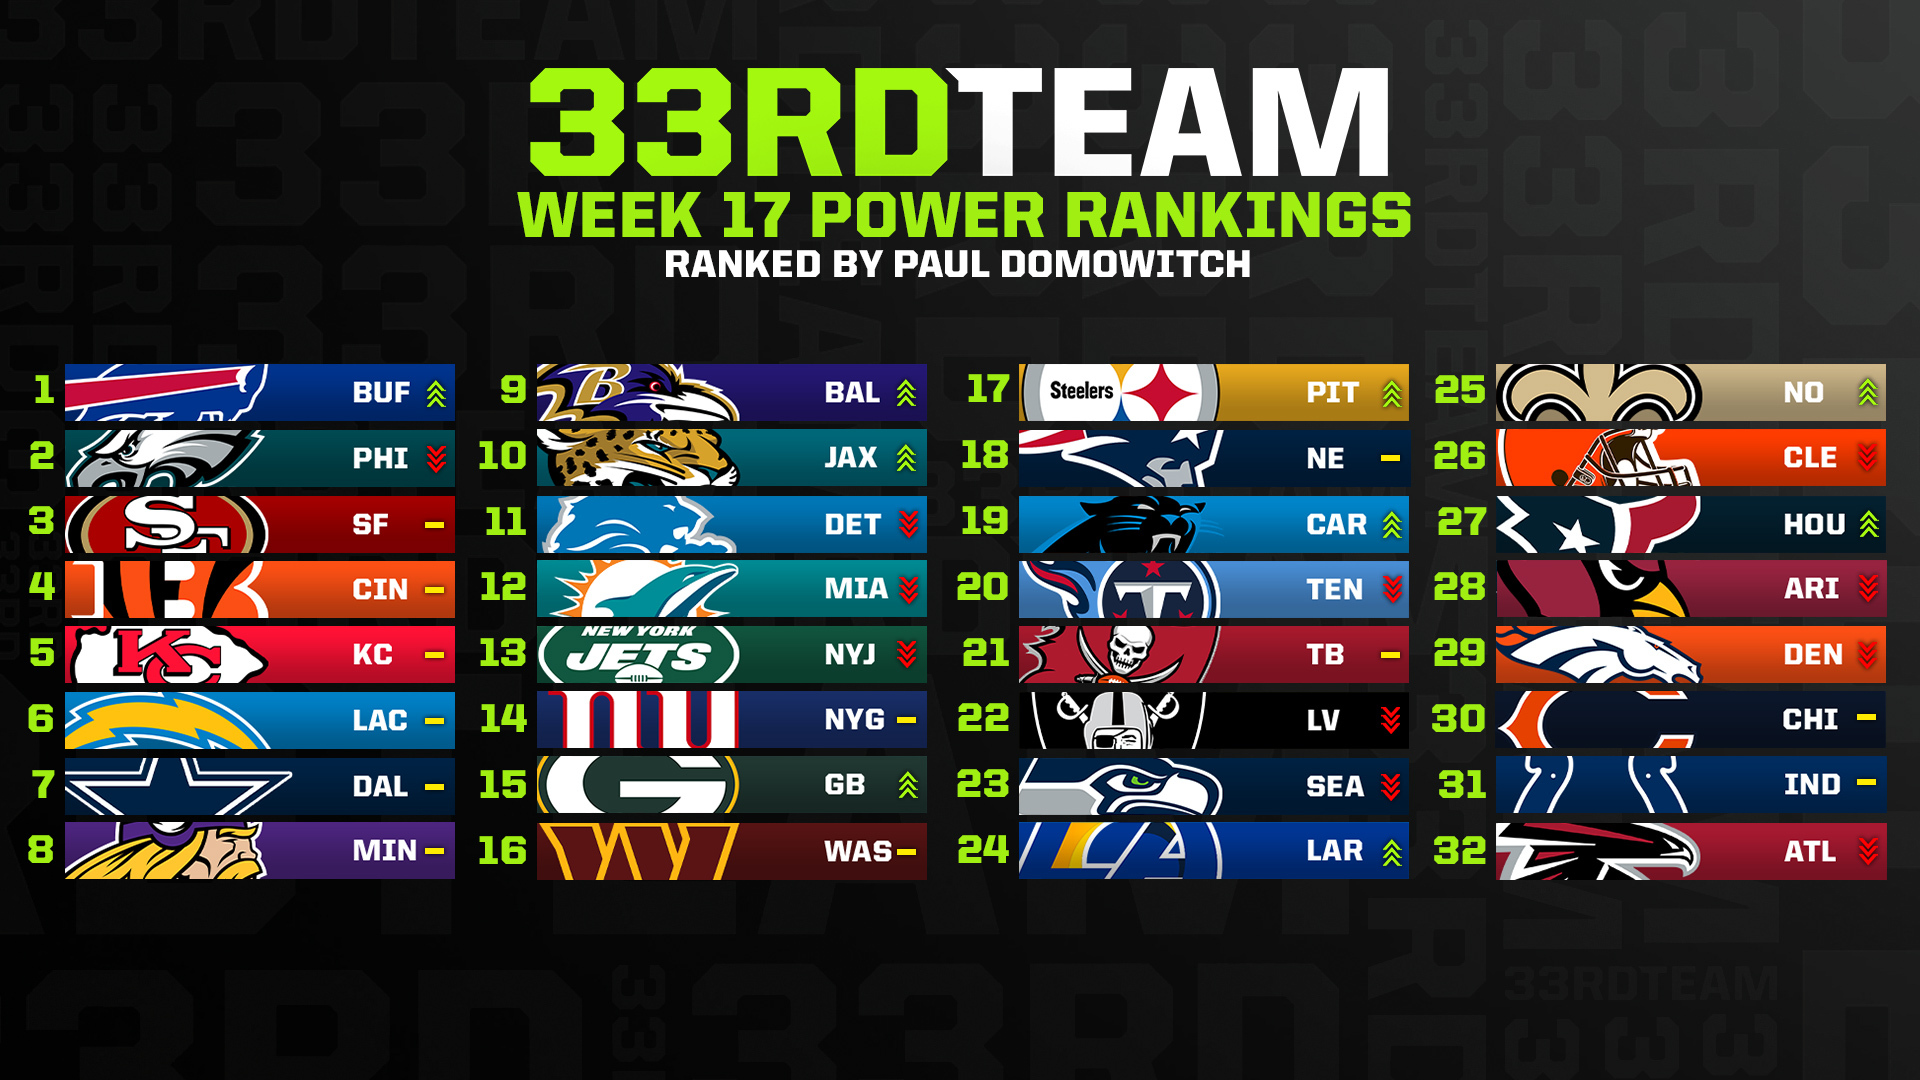 NFL Week 17 Power Rankings: Bills Retake Top Spot from Eagles